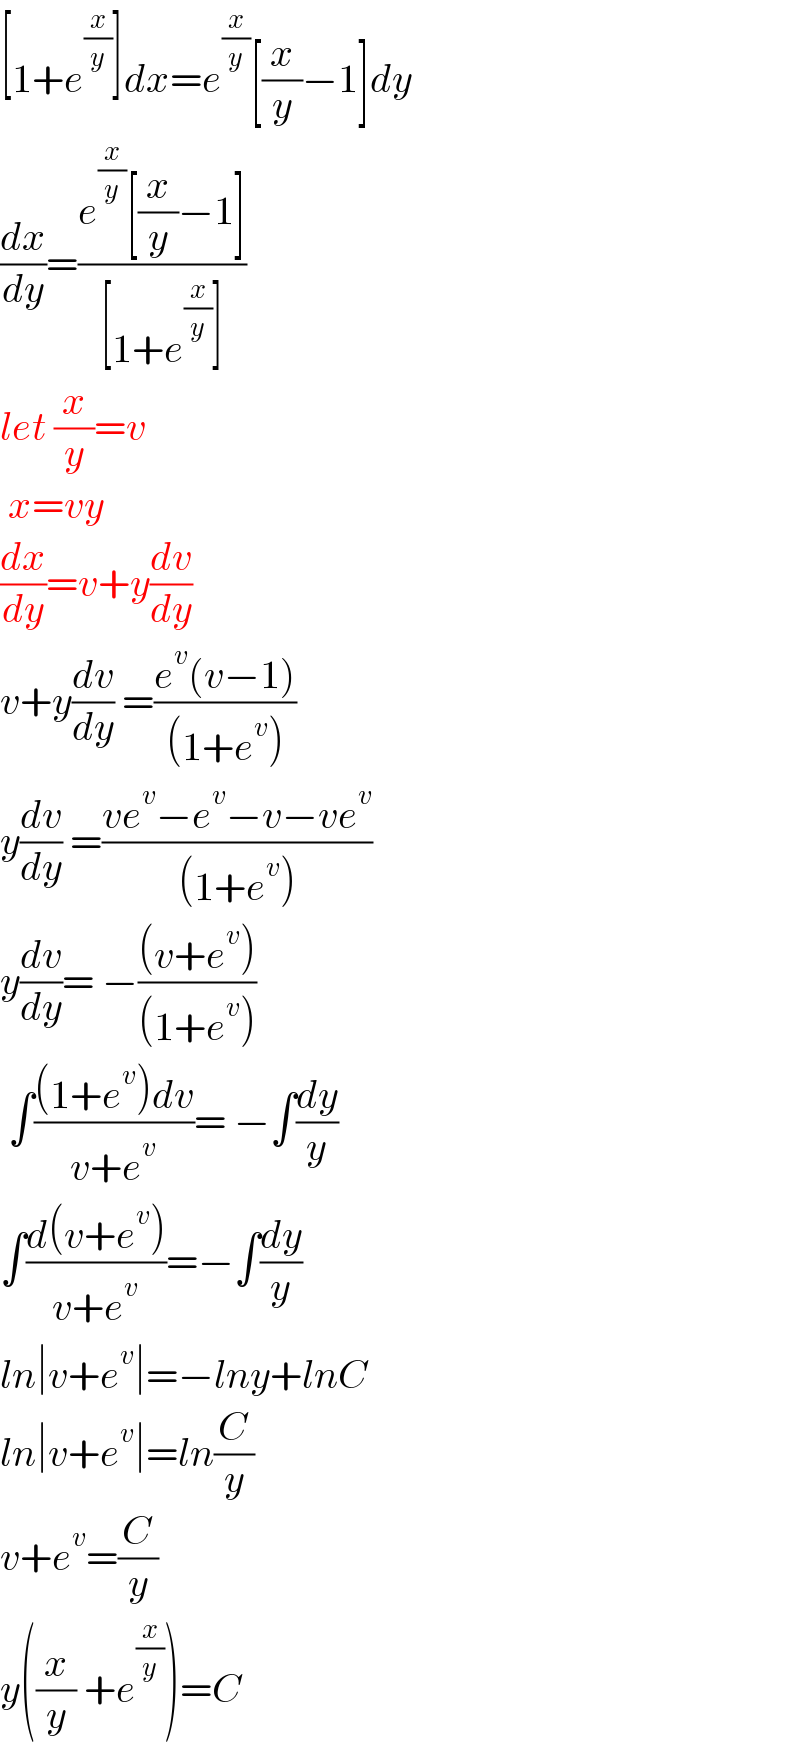 [1+e^(x/y) ]dx=e^(x/y) [(x/y)−1]dy  (dx/dy)=((e^(x/y) [(x/y)−1])/([1+e^(x/y) ]))  let (x/y)=v   x=vy  (dx/dy)=v+y(dv/dy)  v+y(dv/dy) =((e^v (v−1))/((1+e^v )))  y(dv/dy) =((ve^v −e^v −v−ve^v )/((1+e^v )))  y(dv/dy)= −(((v+e^v ))/((1+e^v )))   ∫(((1+e^v )dv)/(v+e^v ))= −∫(dy/y)  ∫((d(v+e^v ))/(v+e^v ))=−∫(dy/y)  ln∣v+e^v ∣=−lny+lnC  ln∣v+e^v ∣=ln(C/y)  v+e^v =(C/y)  y((x/y) +e^(x/y) )=C  